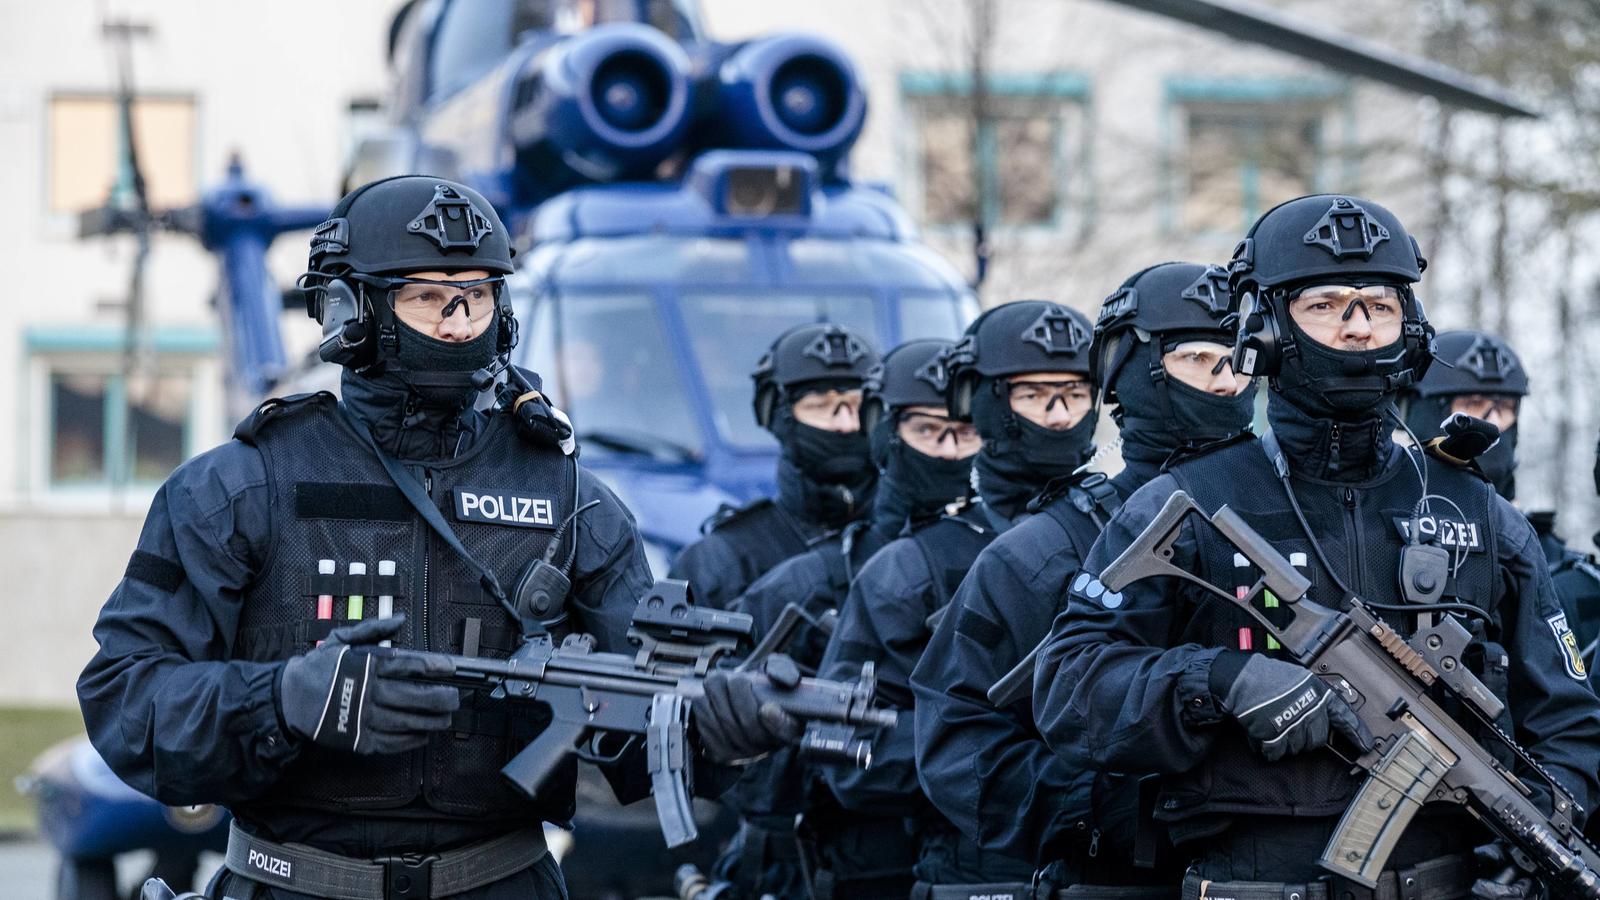 Gsg 9: подразделение спецназа федеральной полиции германии